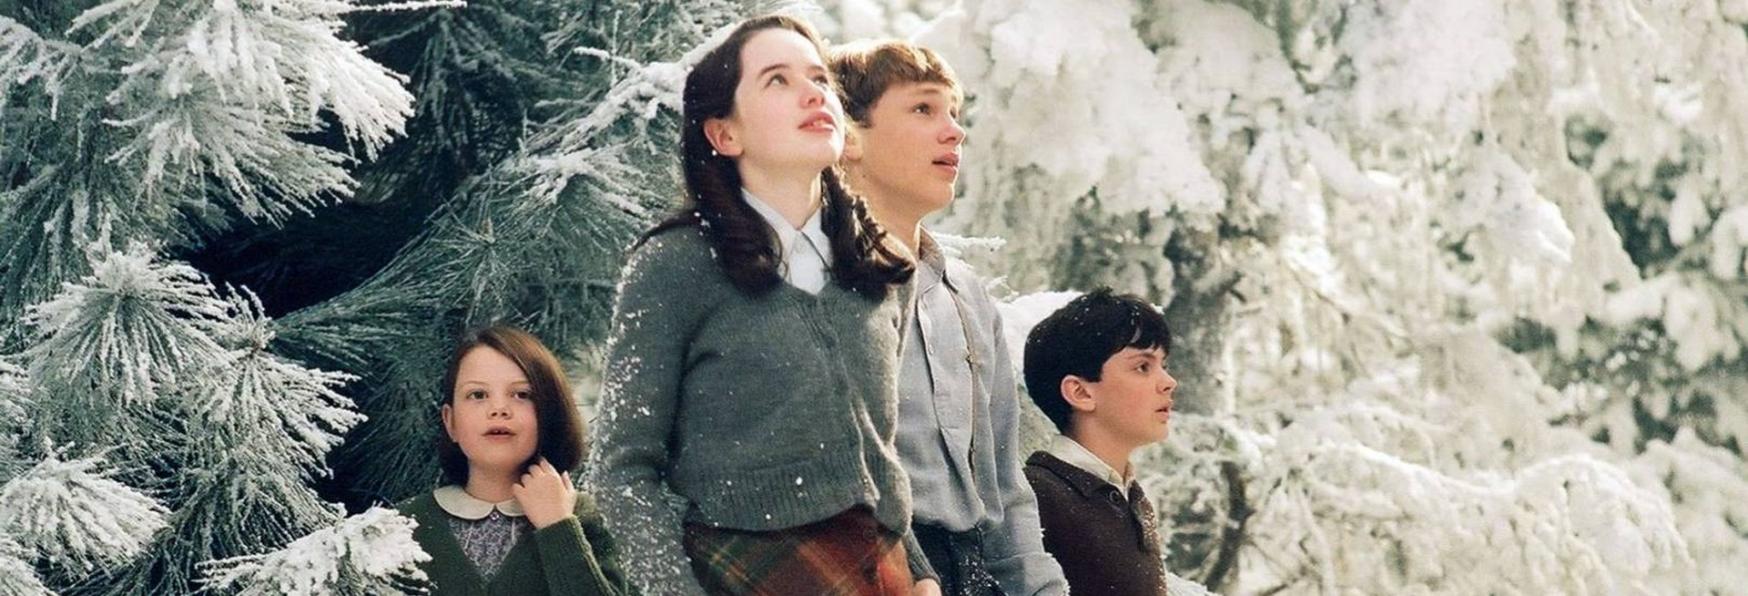 Le Cronache di Narnia: gli ultimi Aggiornamenti su Serie TV e Film di Netflix